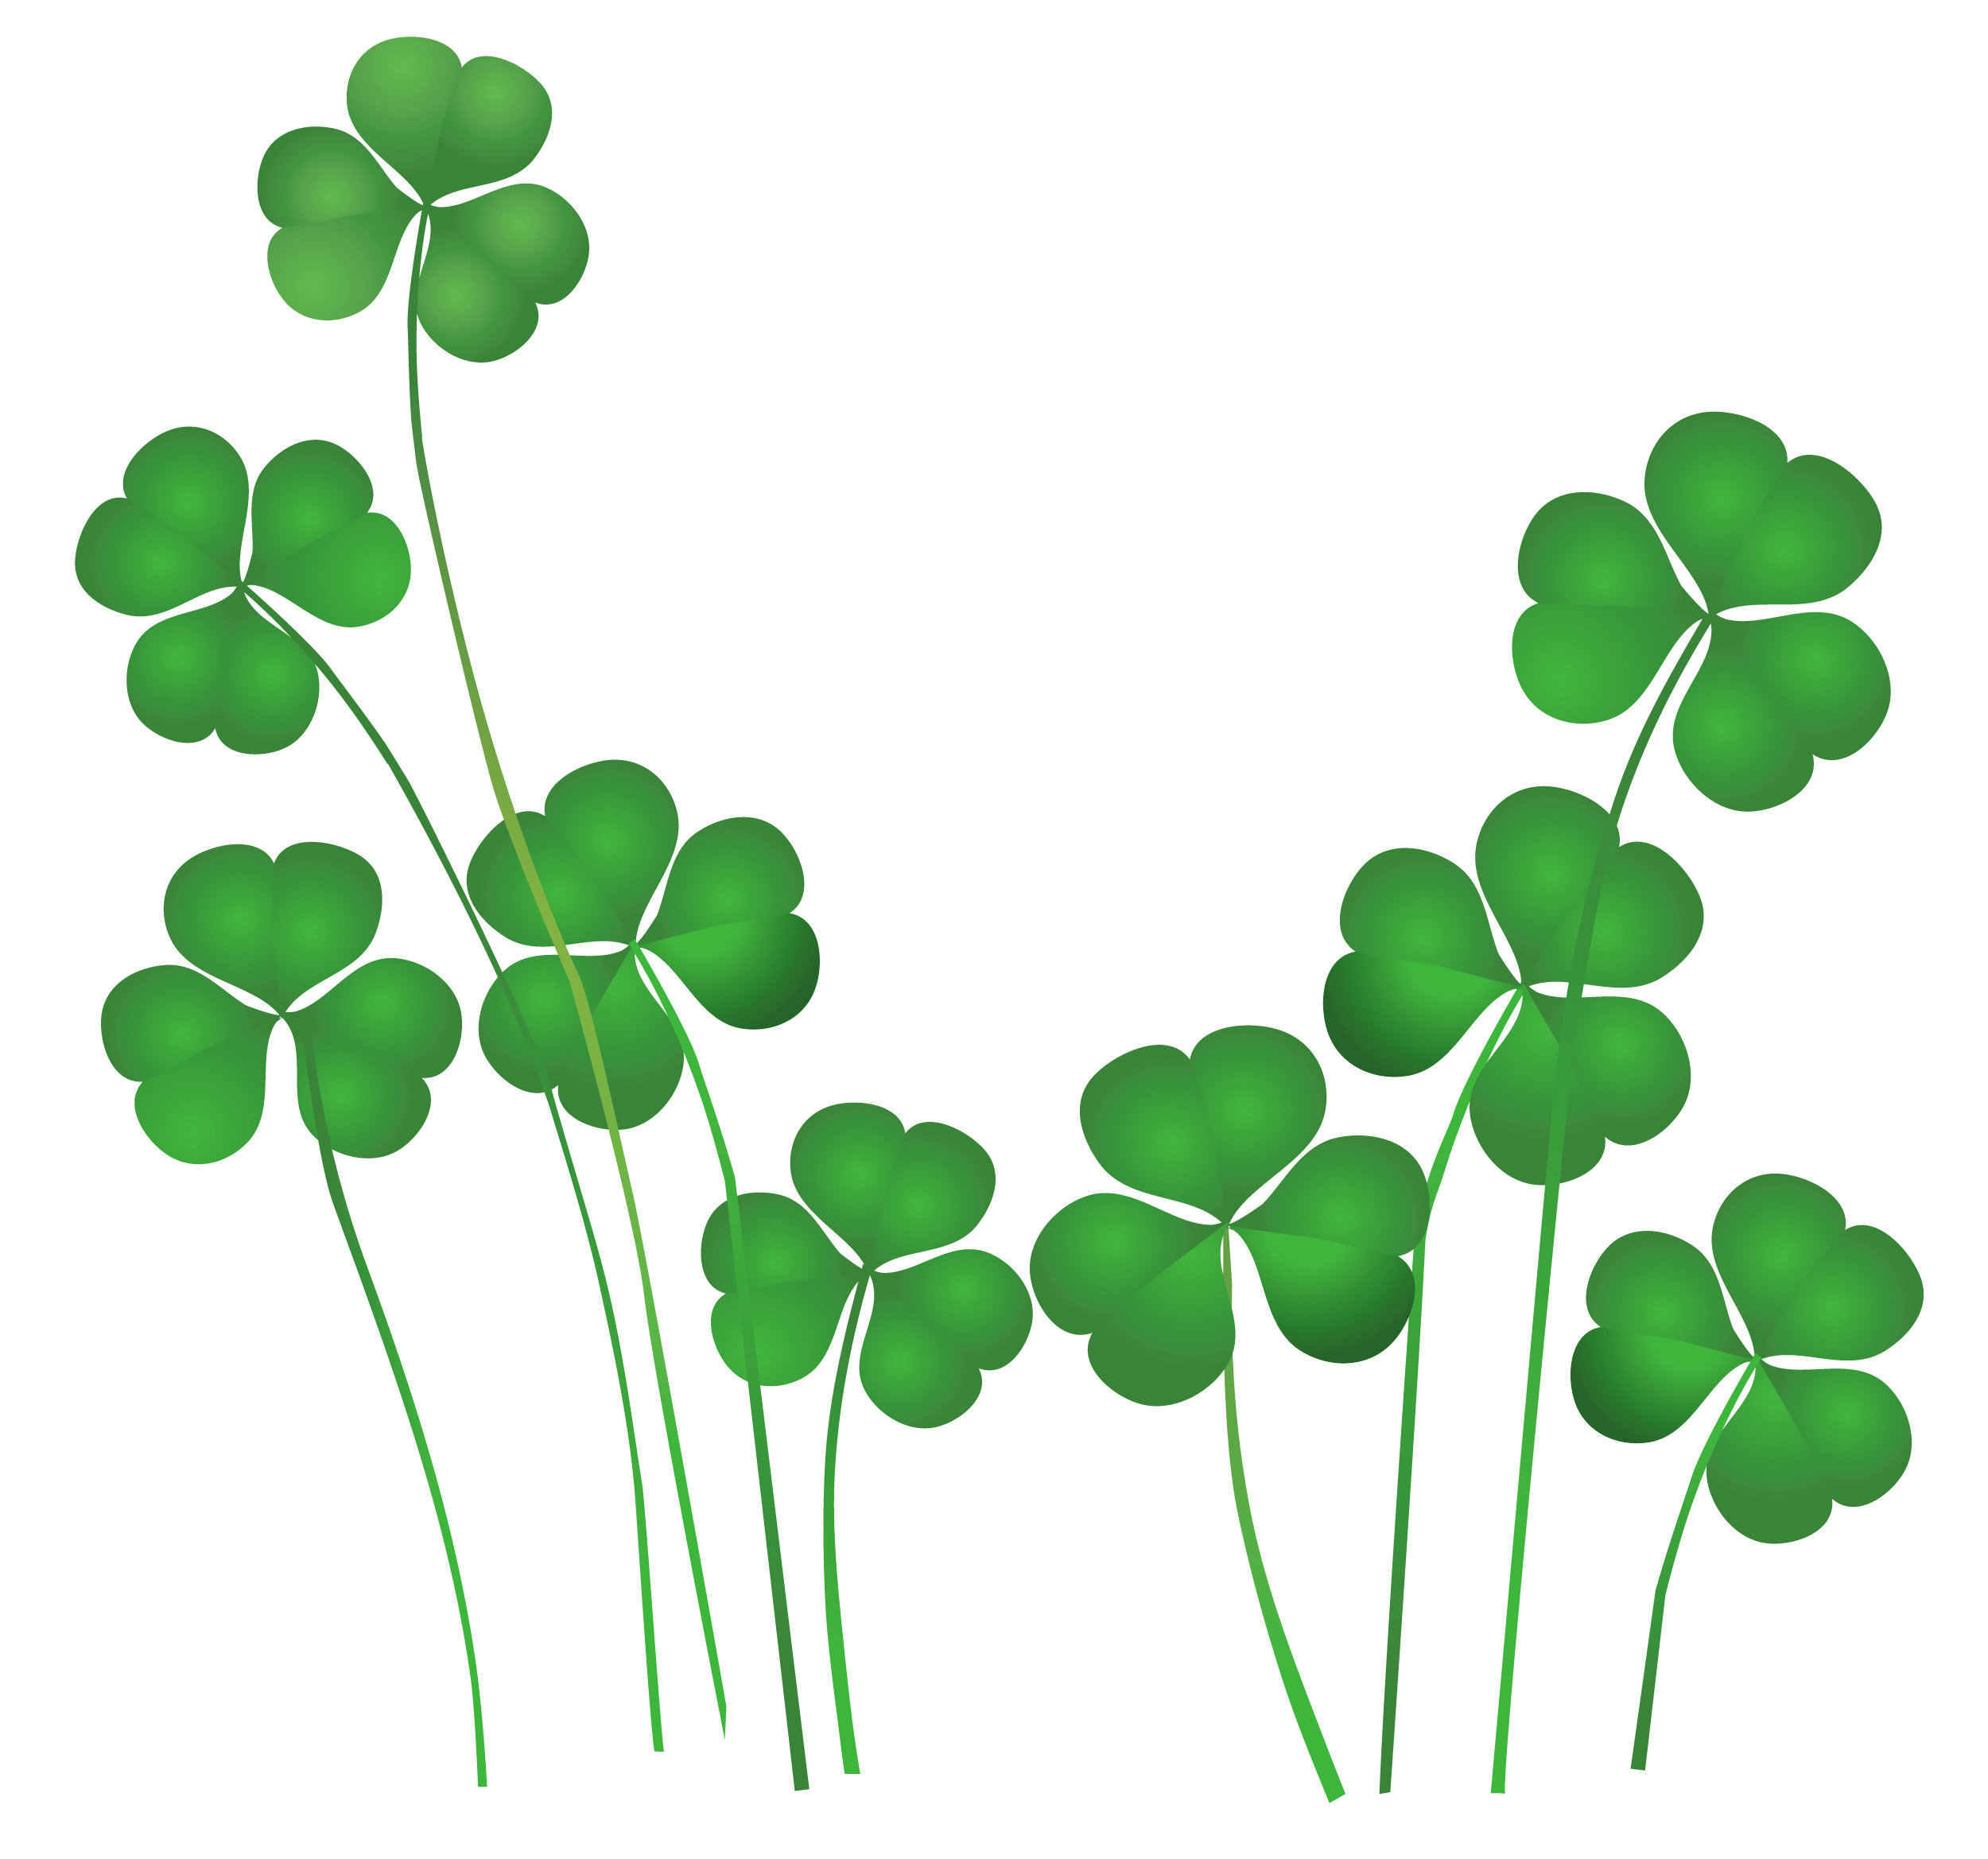 St Patrick's Day Shamrocks icons